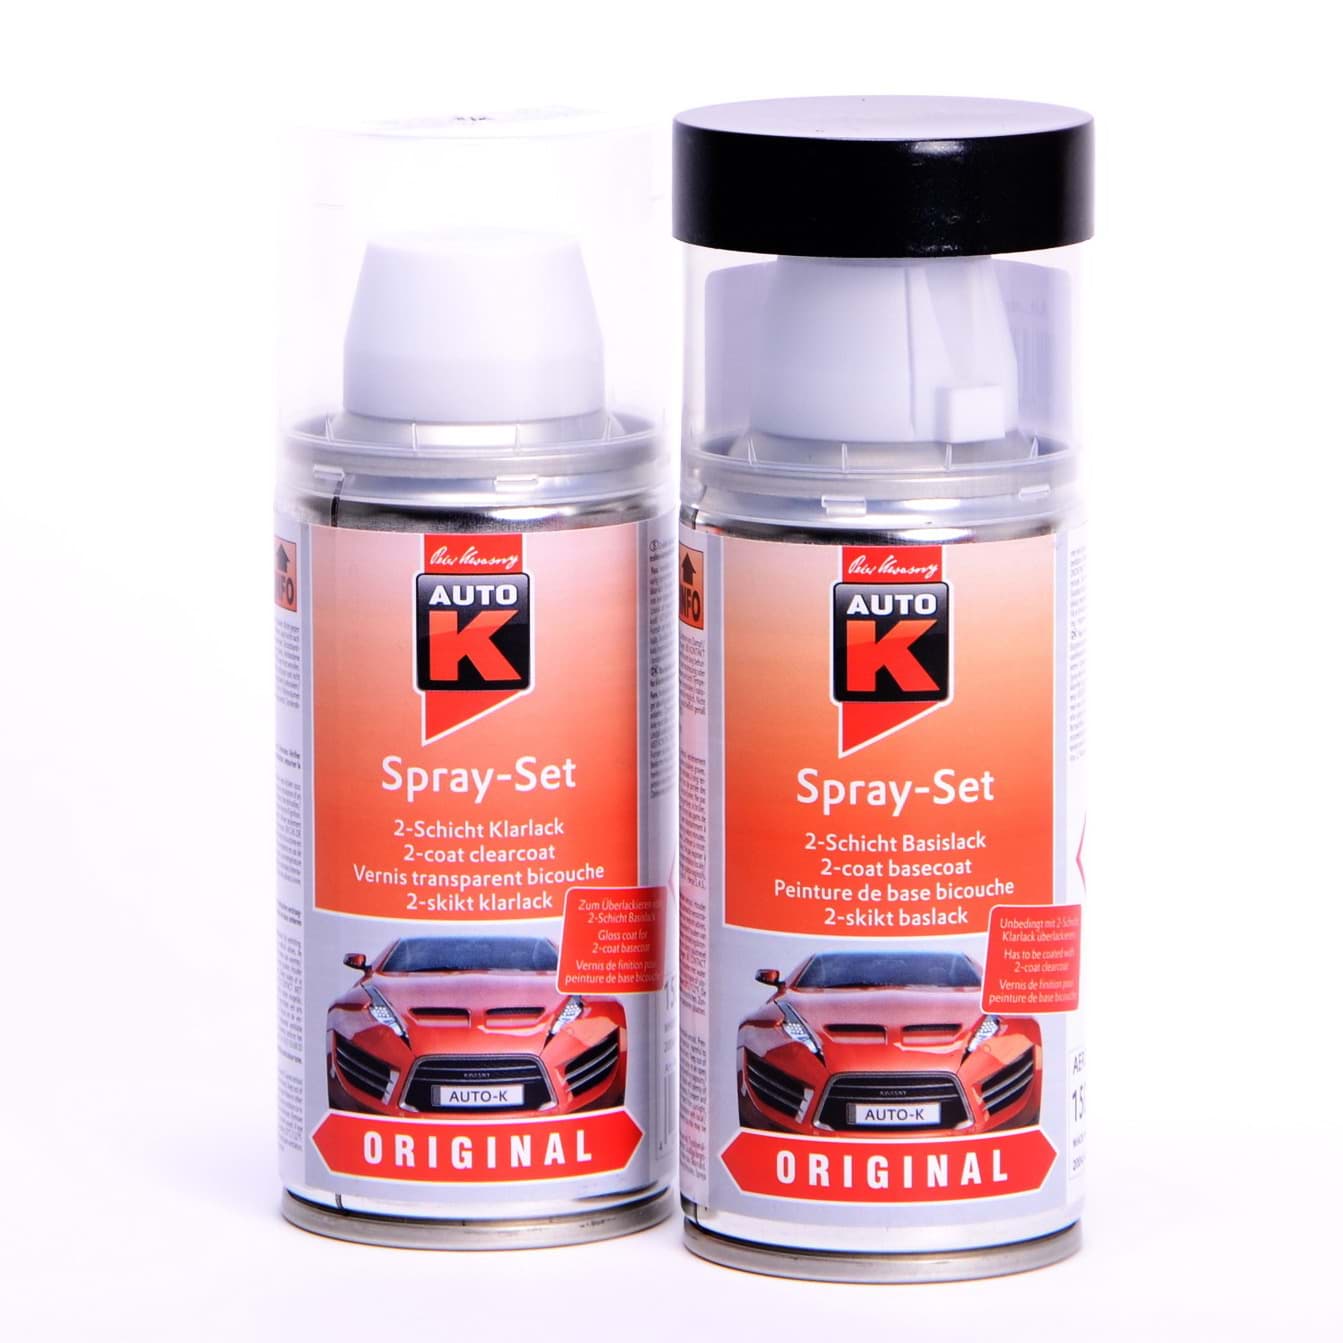 Afbeelding van Auto-K Spray-Set Autolack für Mercedes 623 Taxi Hellelfenbein 23155